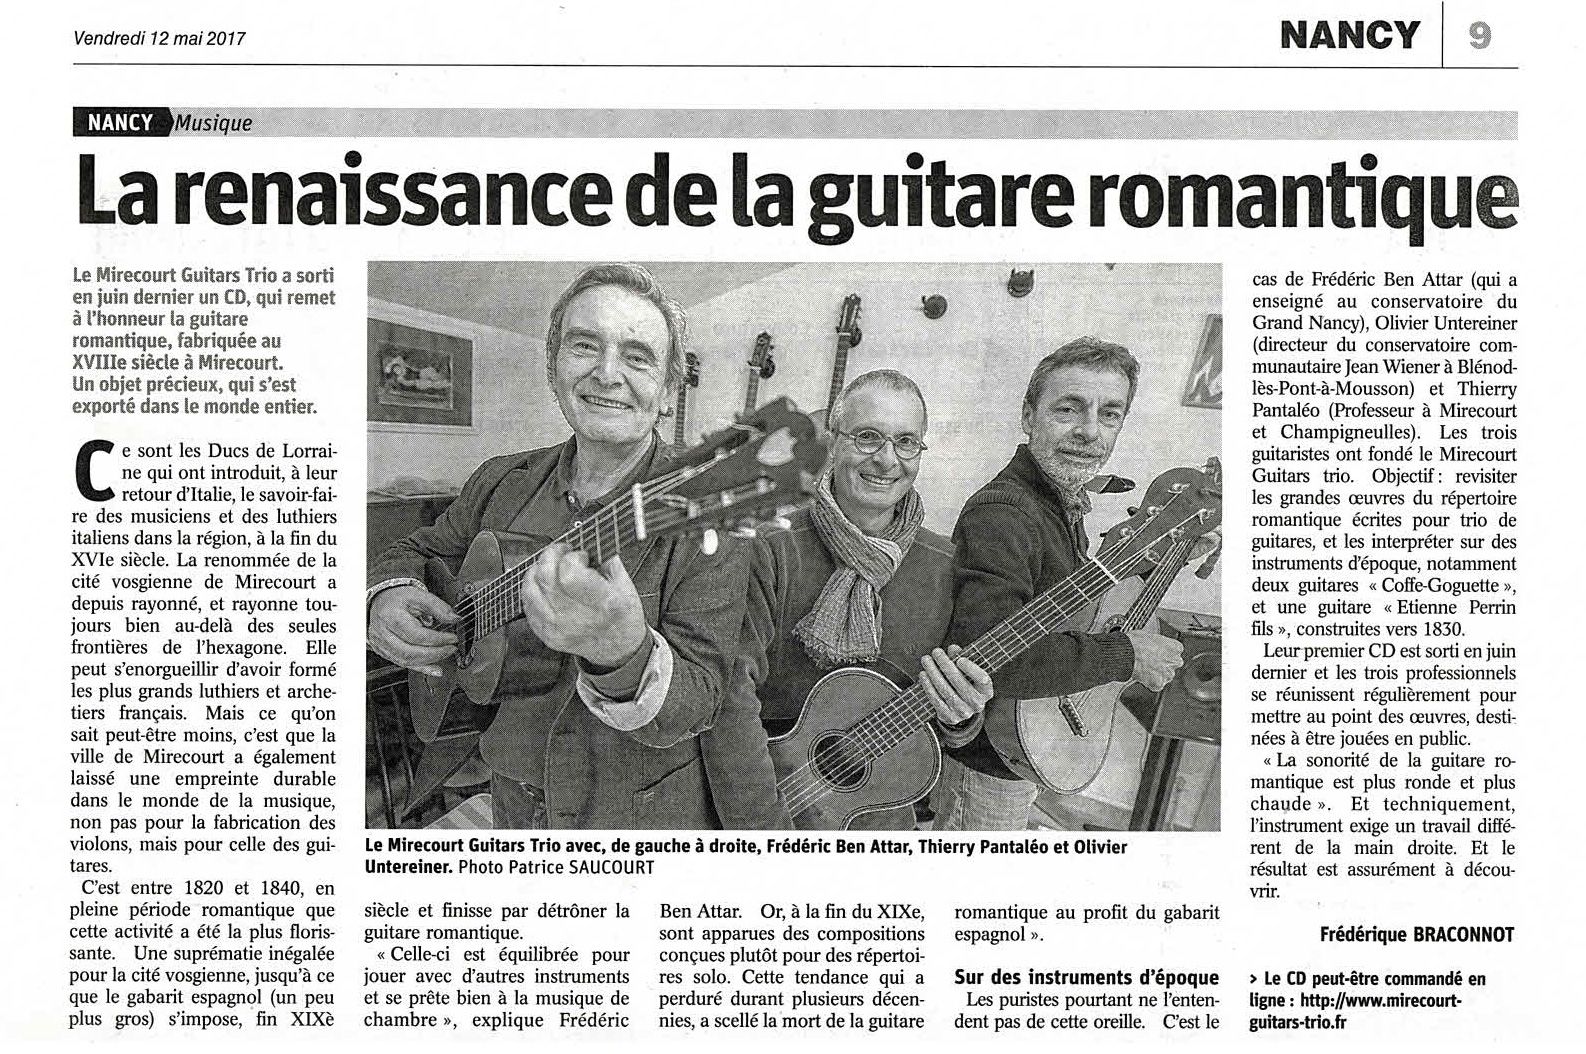 mirecourt-guitars-trio EST REPUBLICAIN 12-05-17